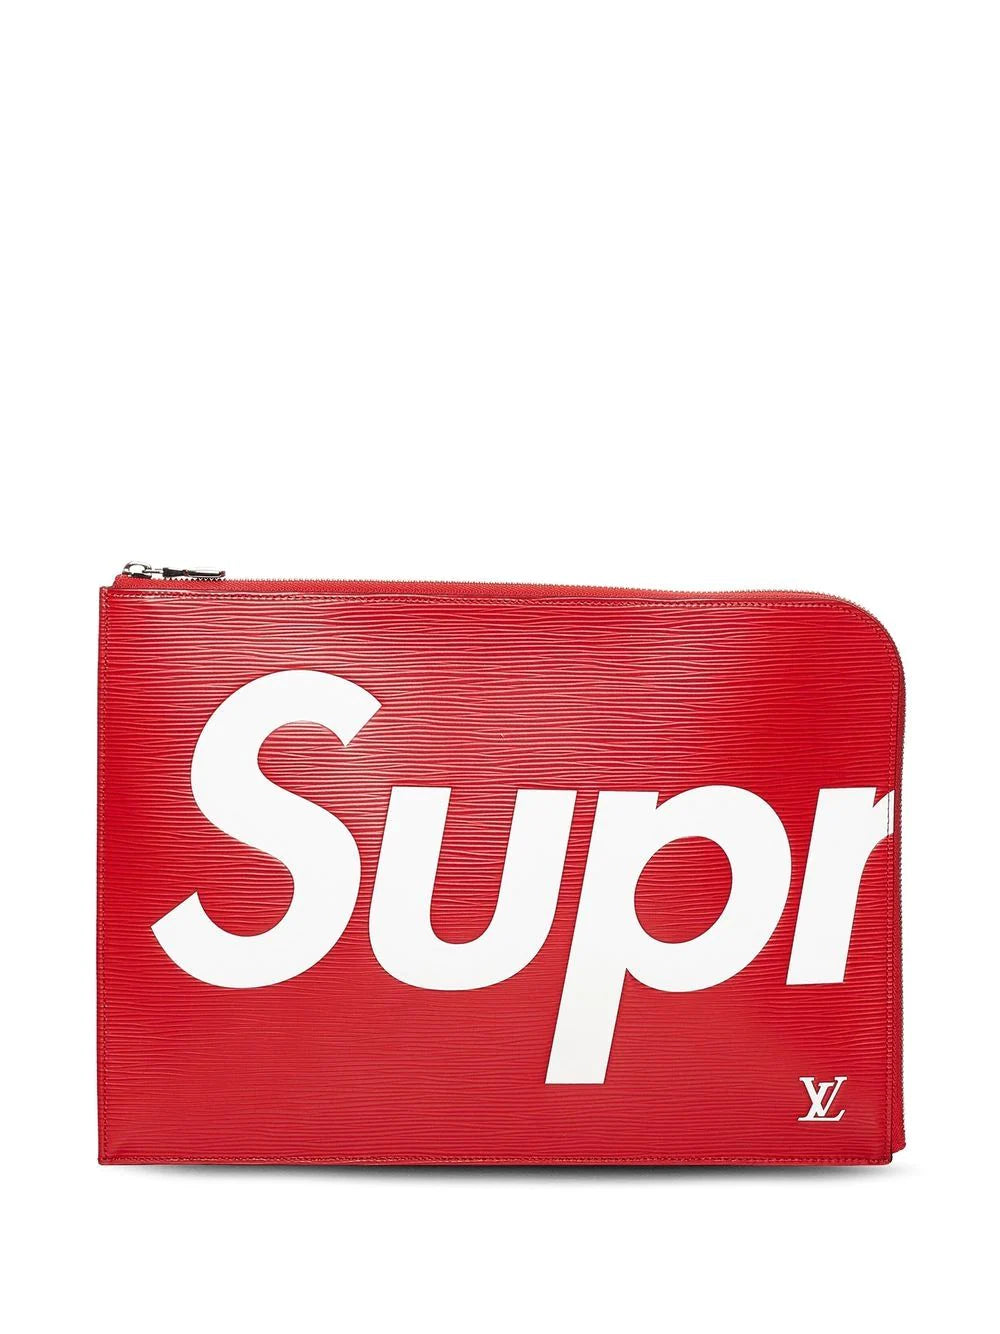 Louis Vuitton x Supreme Slender Bi-Fold Wallet